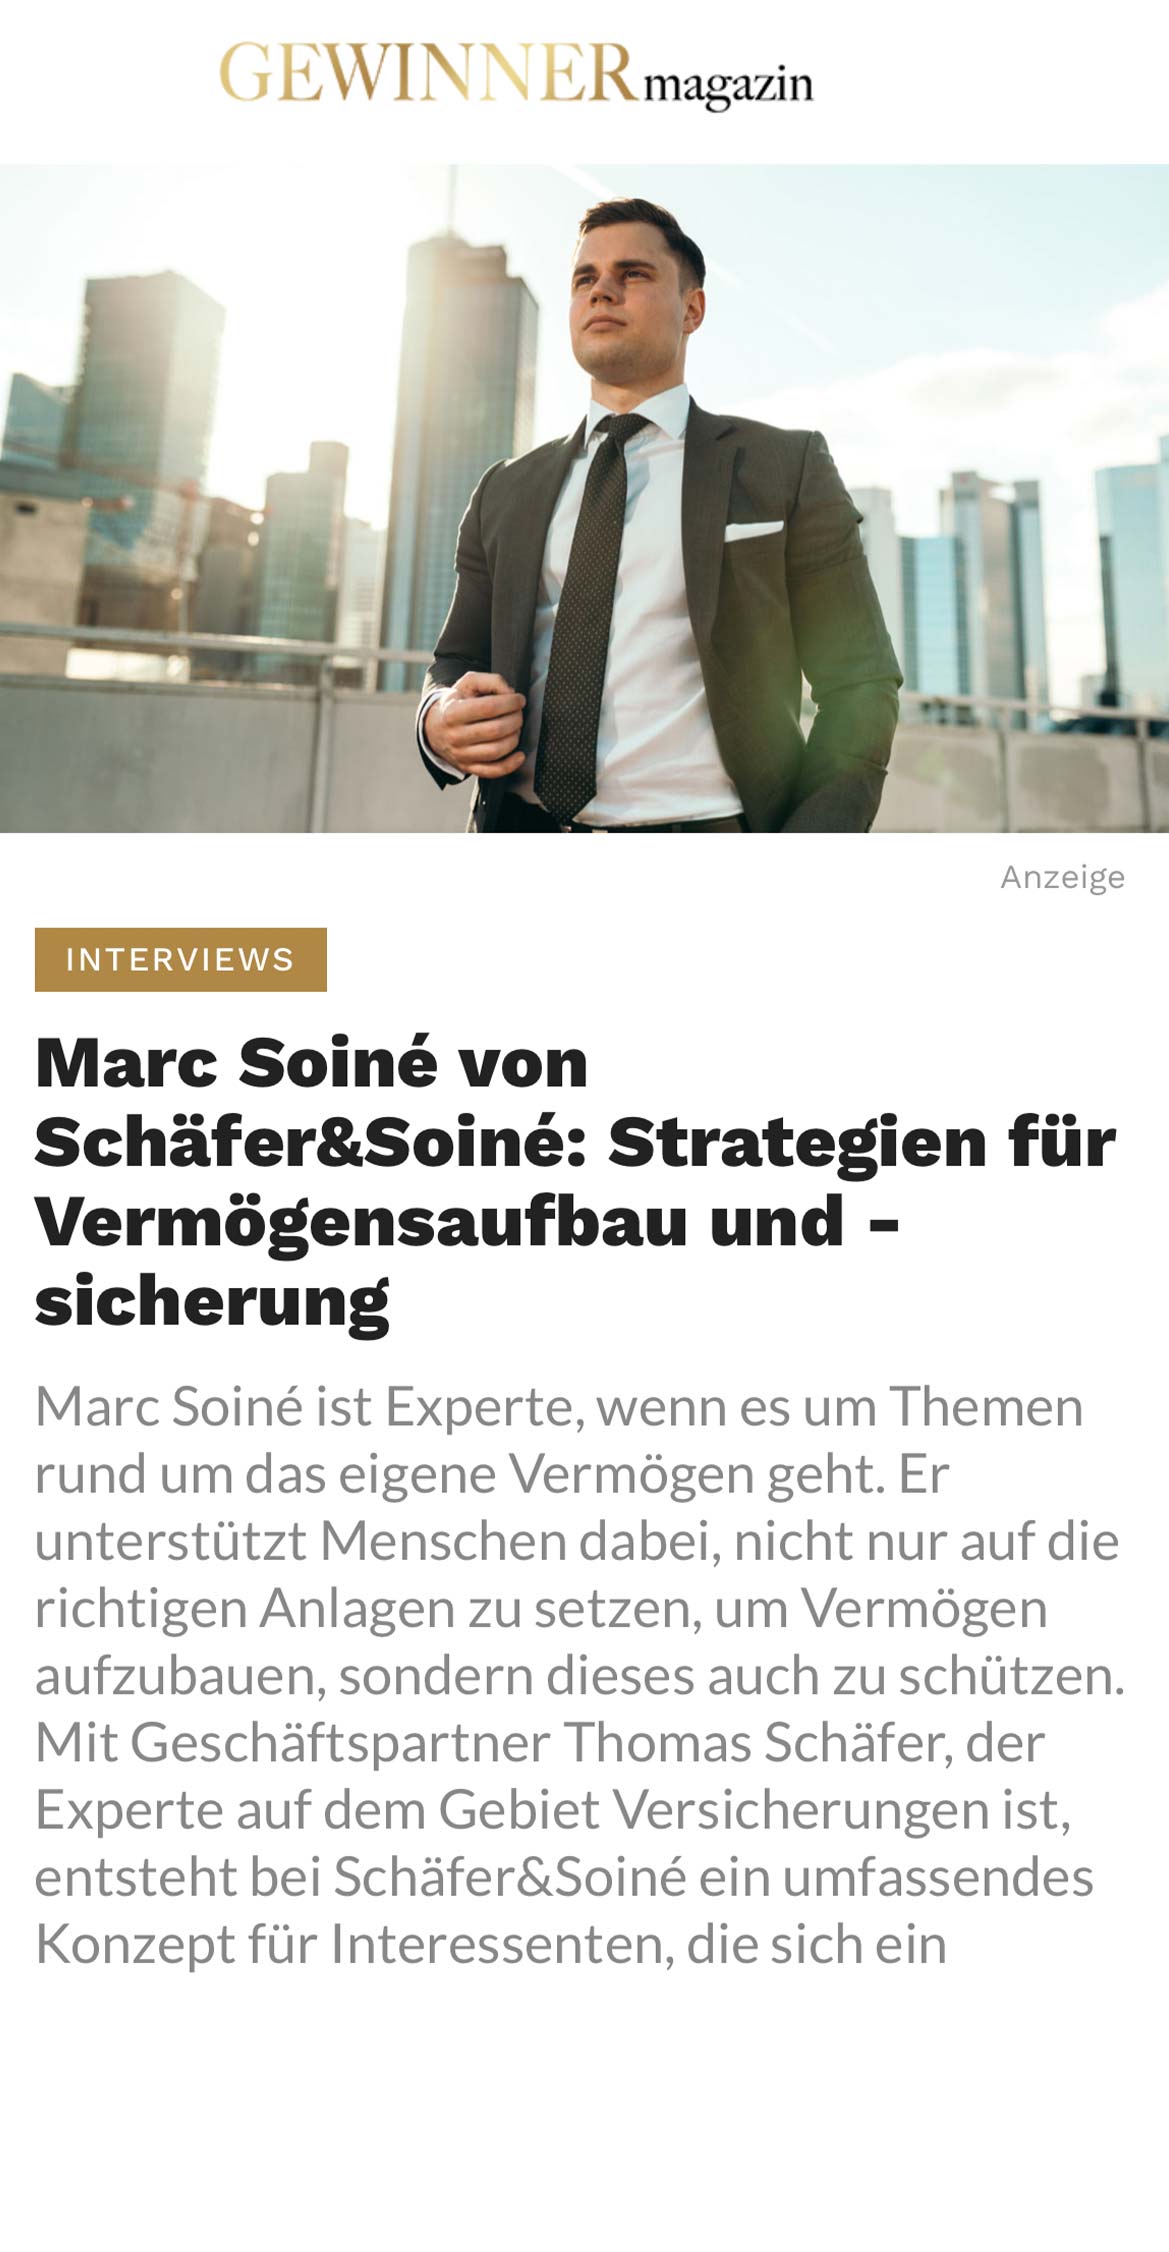 https://schaefer-soine.de/wp-content/uploads/2022/06/presse_gewinnermagazin_Marc-Soiné-von-SchäferSoiné-Strategien-für-Vermögensaufbau-und-sicherung-.jpg